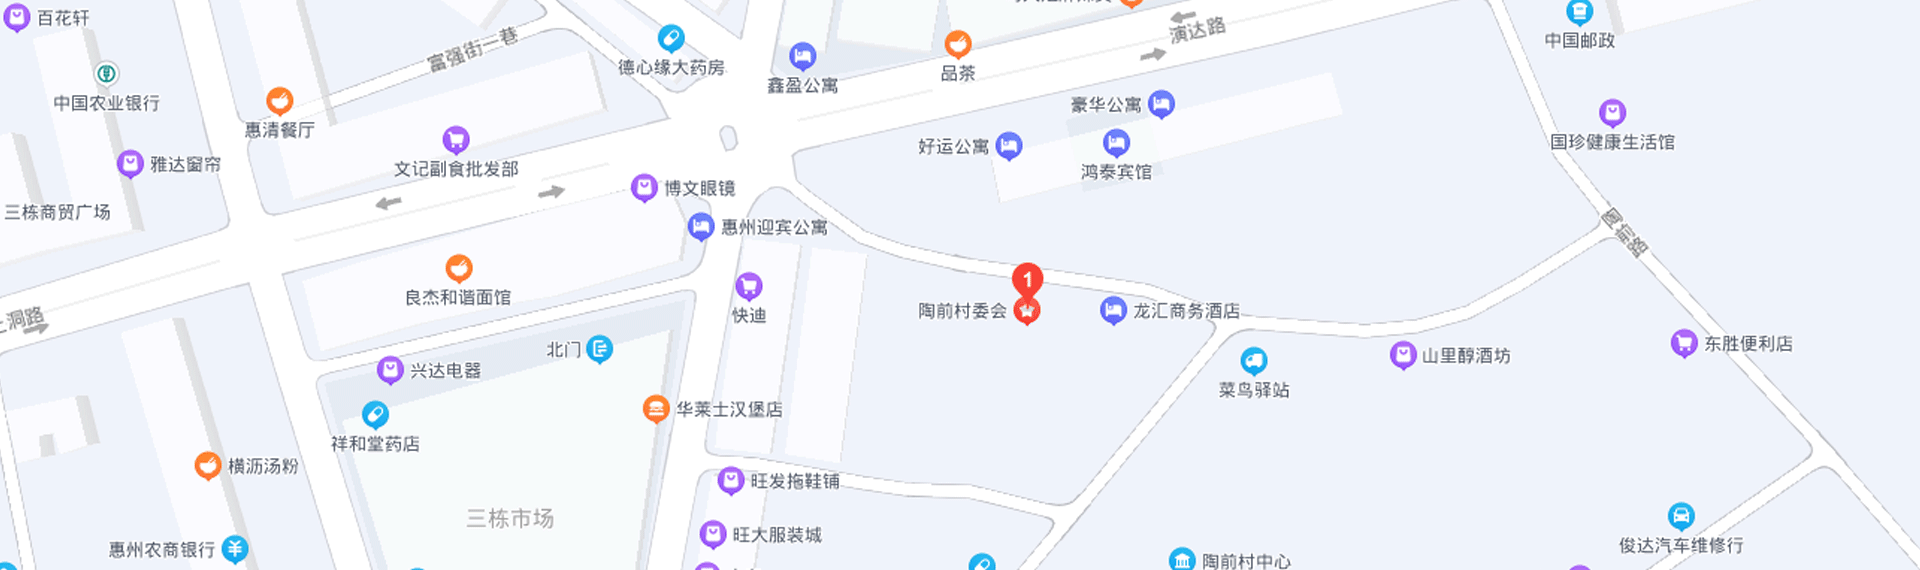 惠州循環利用產業園